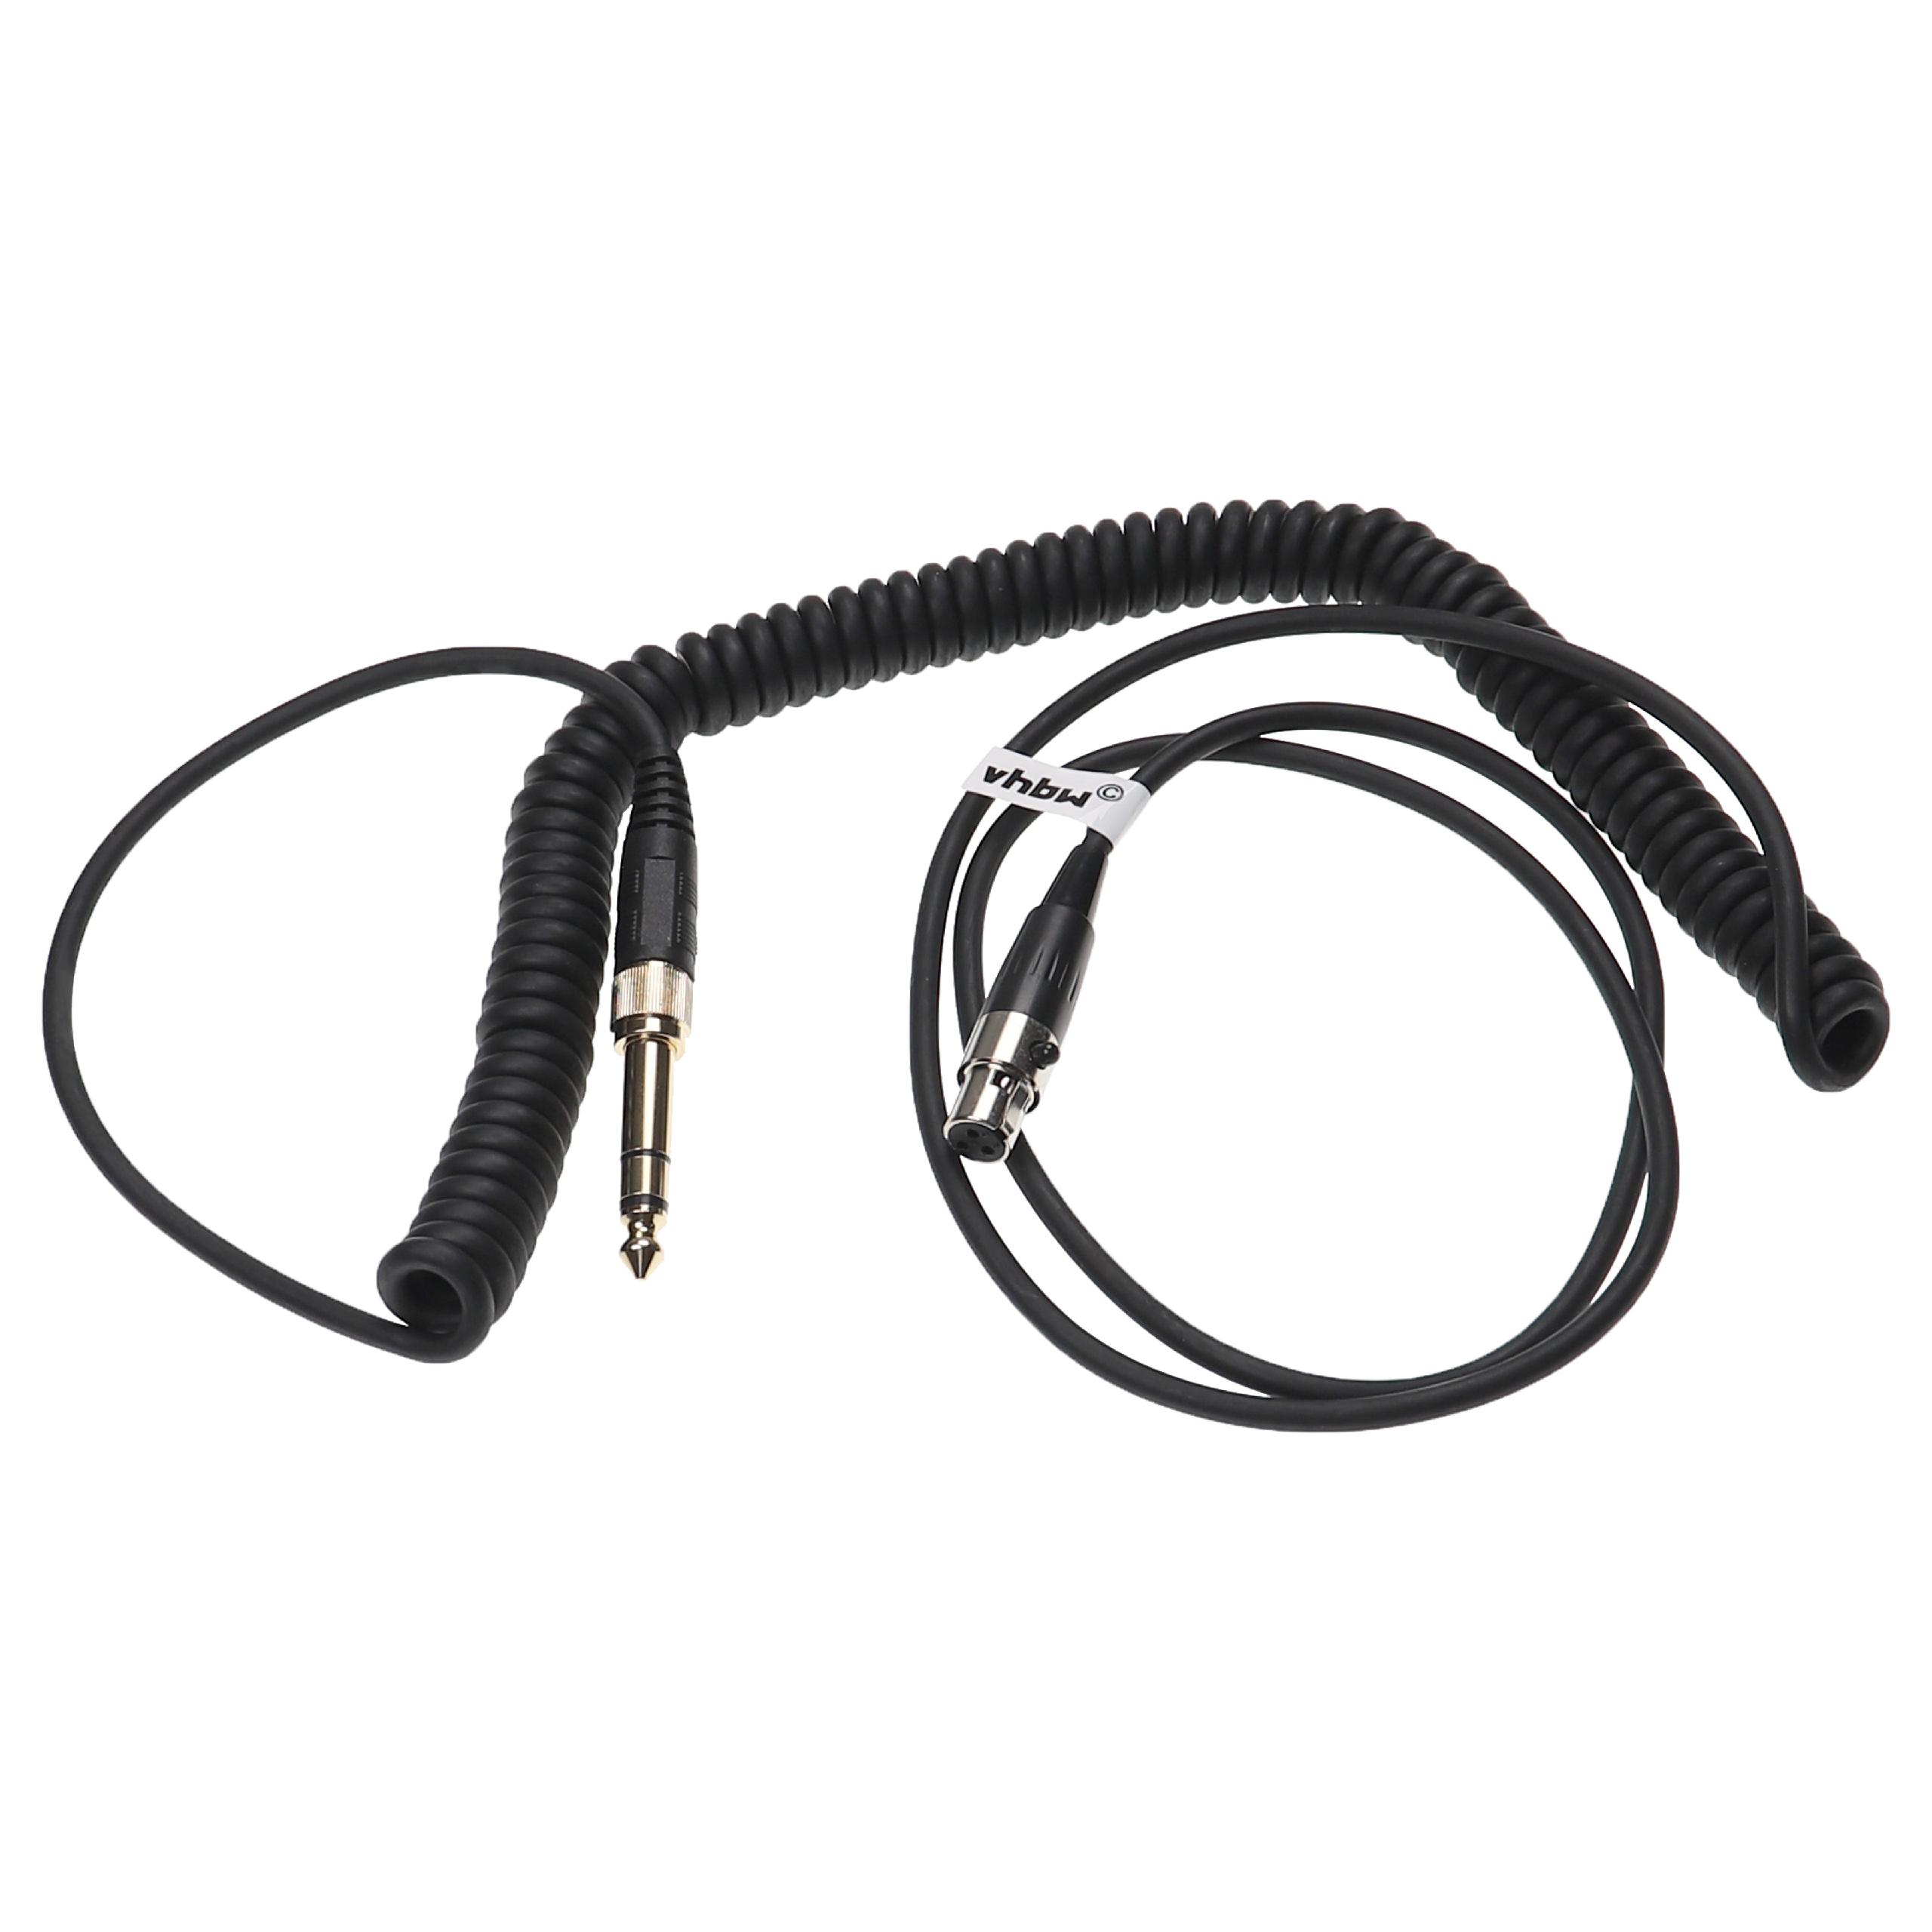 Kopfhörer Kabel passend für AKG, Pioneer K240 MK II u.a., 100 - 300 cm, schwarz